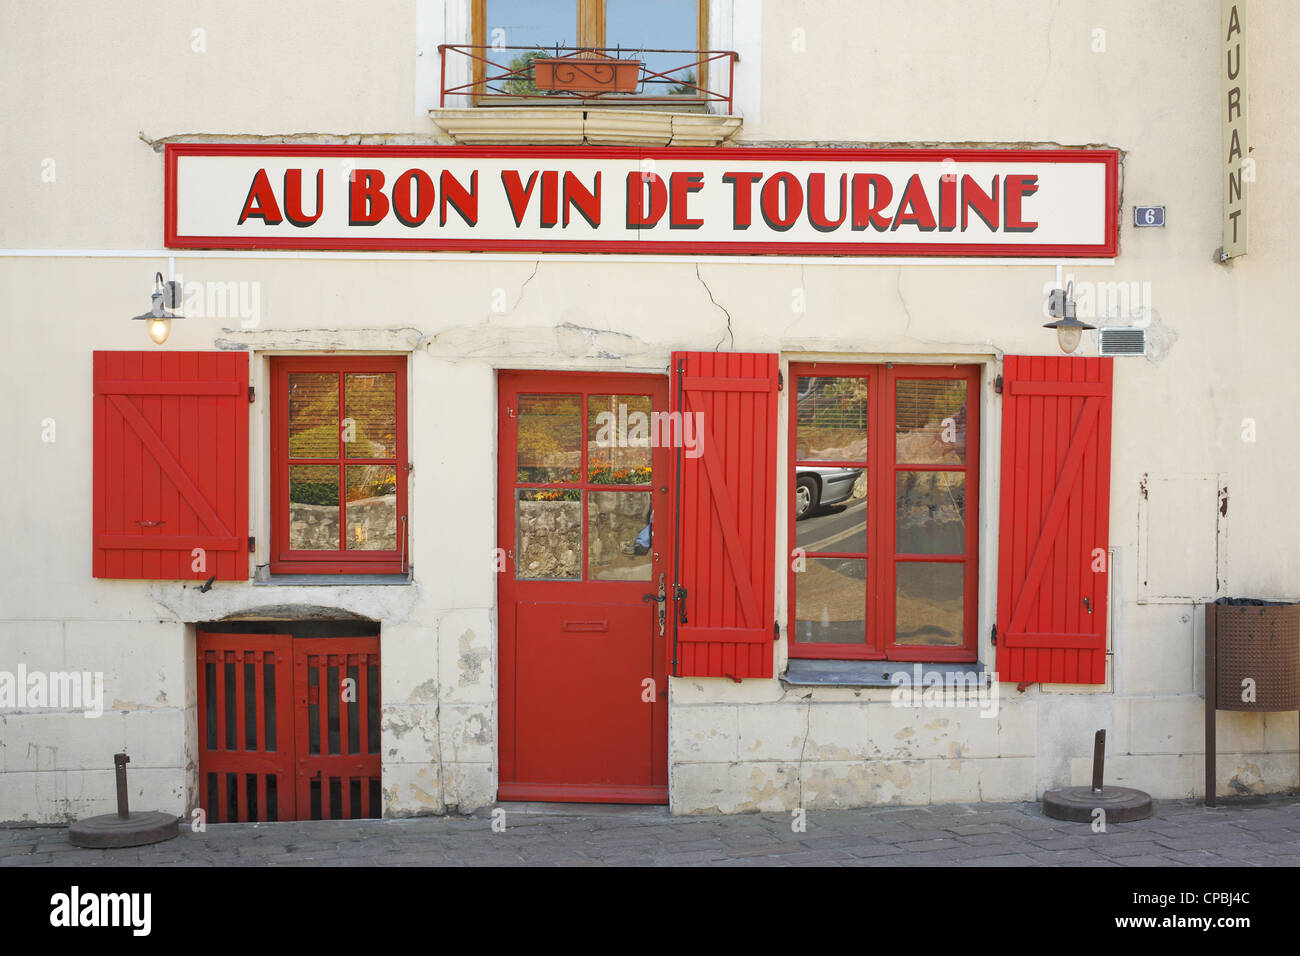 Au Bon Vin de Touraine (Good Wine of Touraine)  Loire Valley wine region, Azay-le-Rideau, France Stock Photo